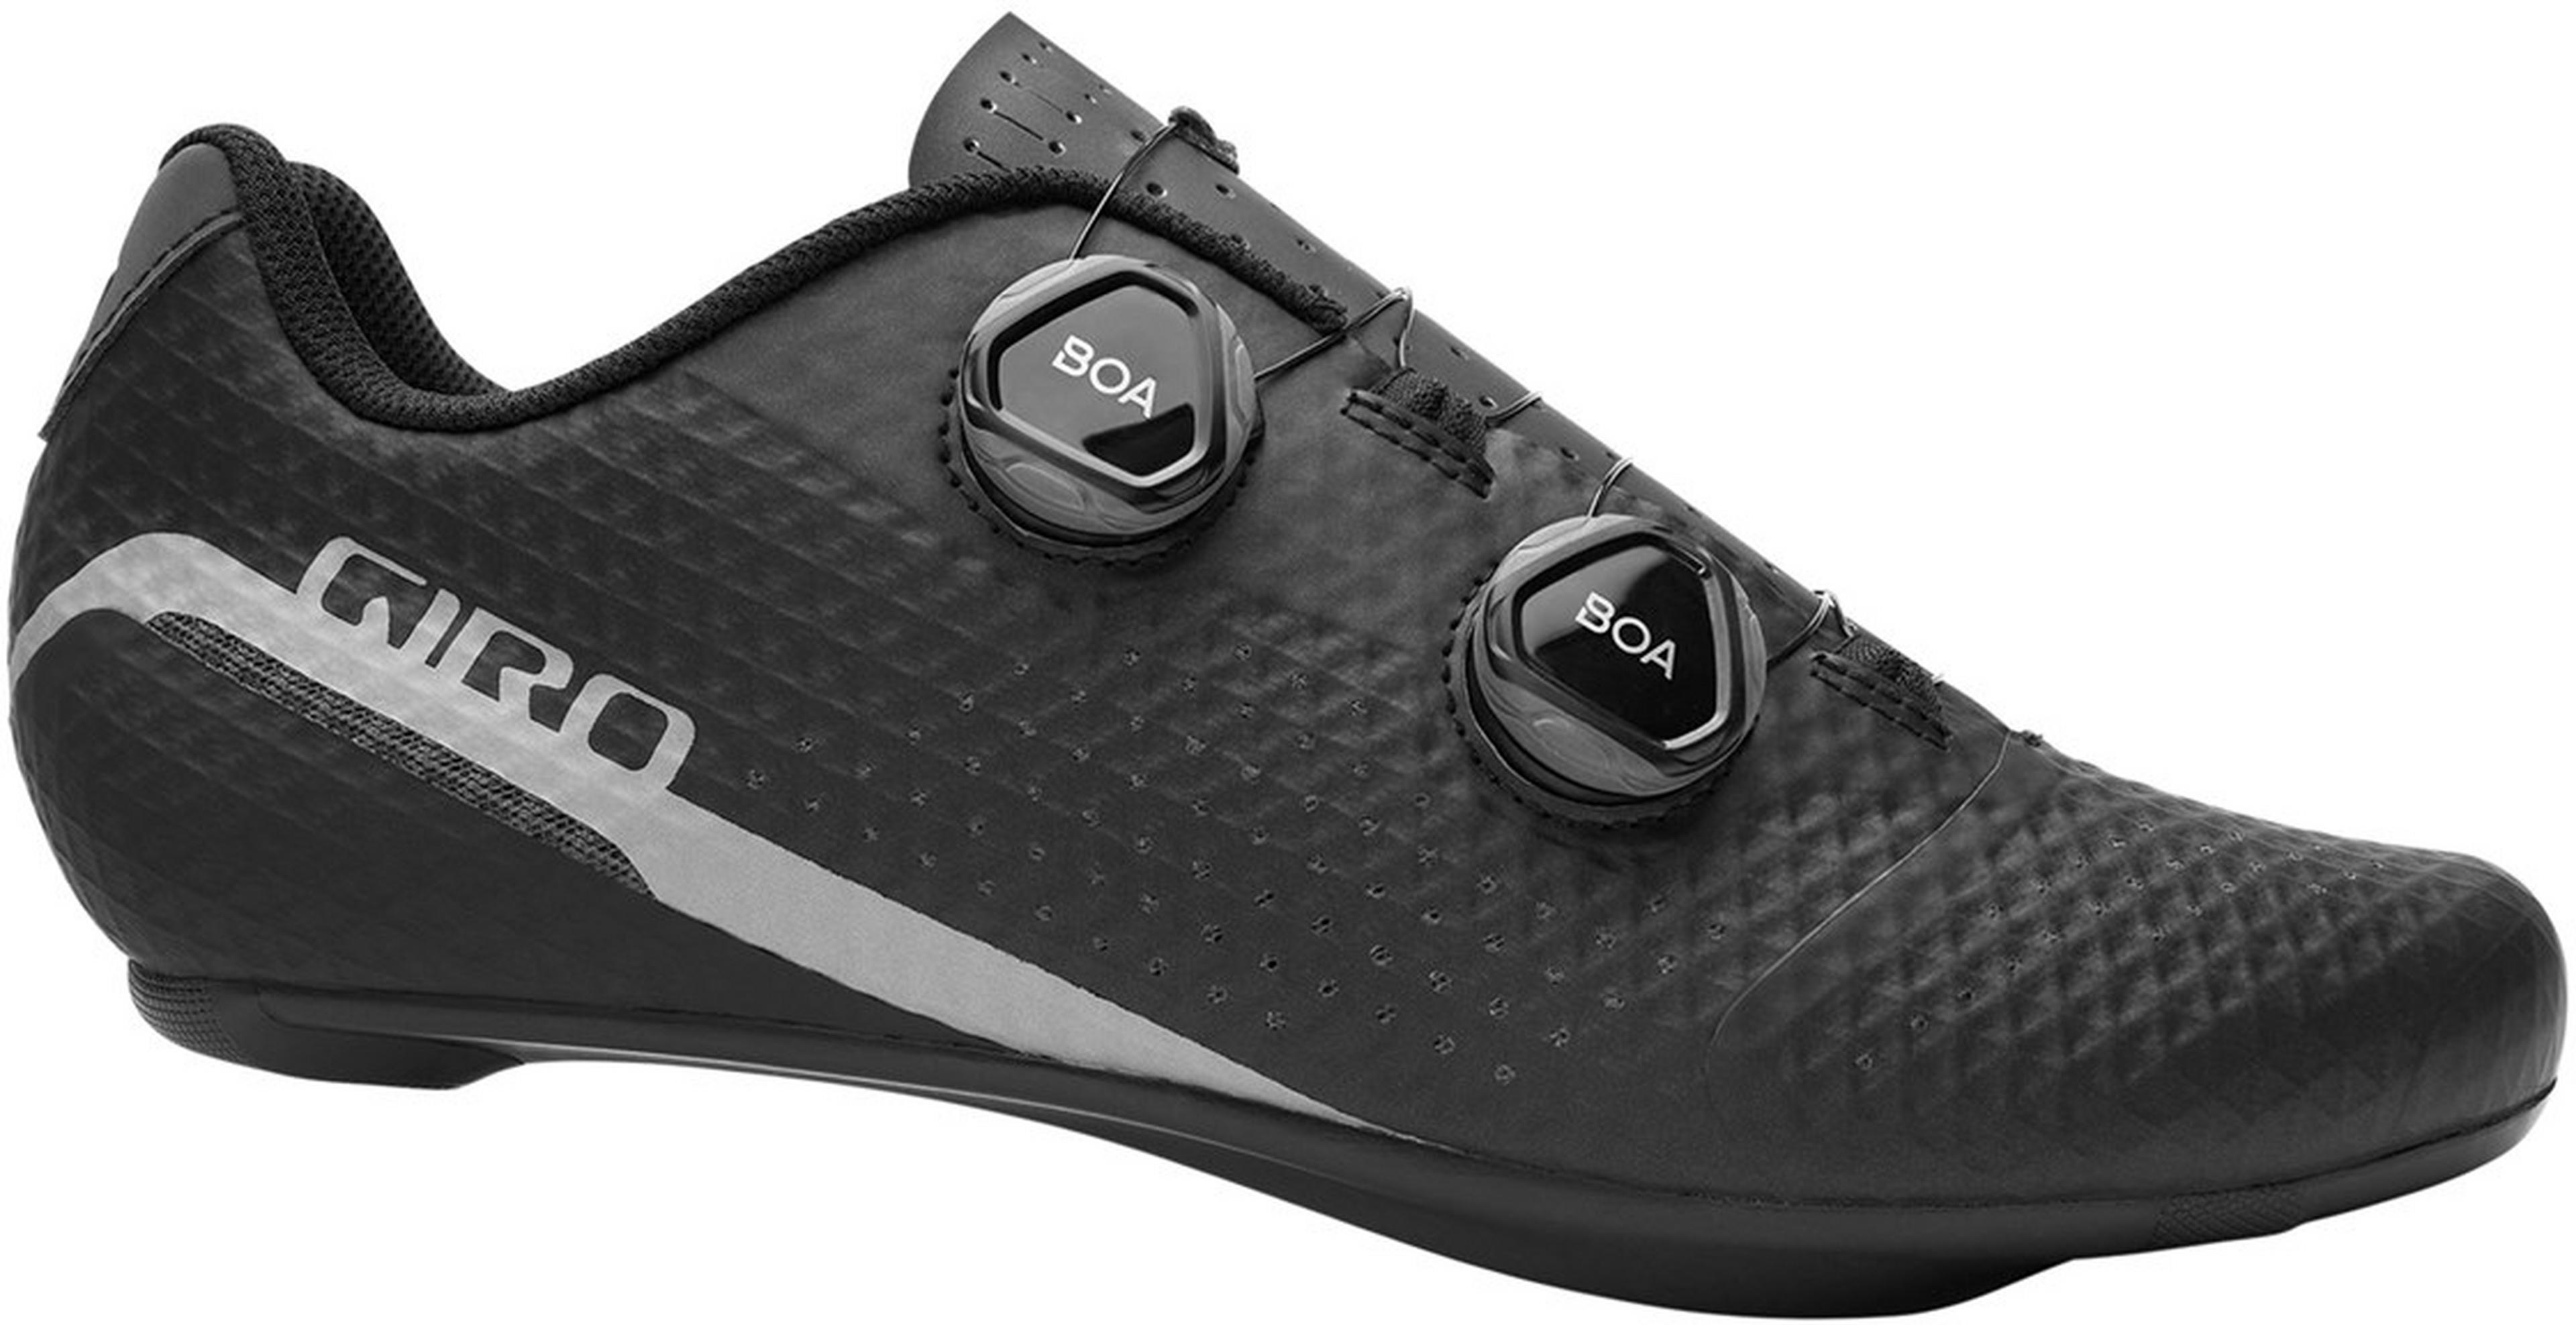 Giro Imperial Cycling Shoes - Men's & Women's Mtb & Road Bike Sneakers